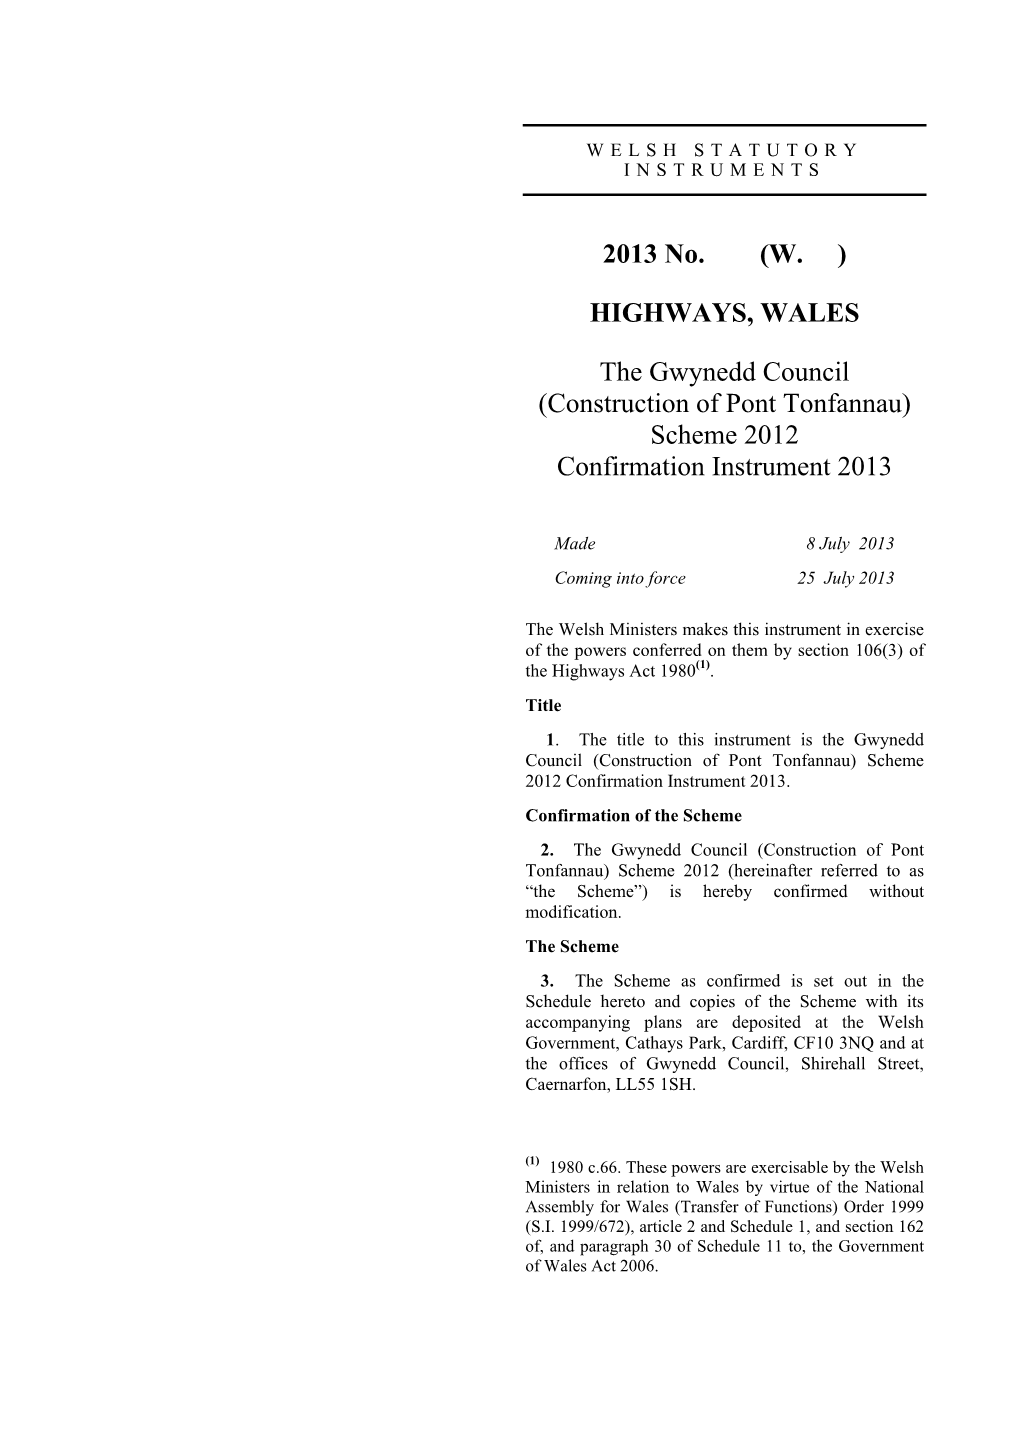 The Gwynedd Council (Construction of Pont Tonfannau) Scheme 2012 Confirmation Instrument 2013